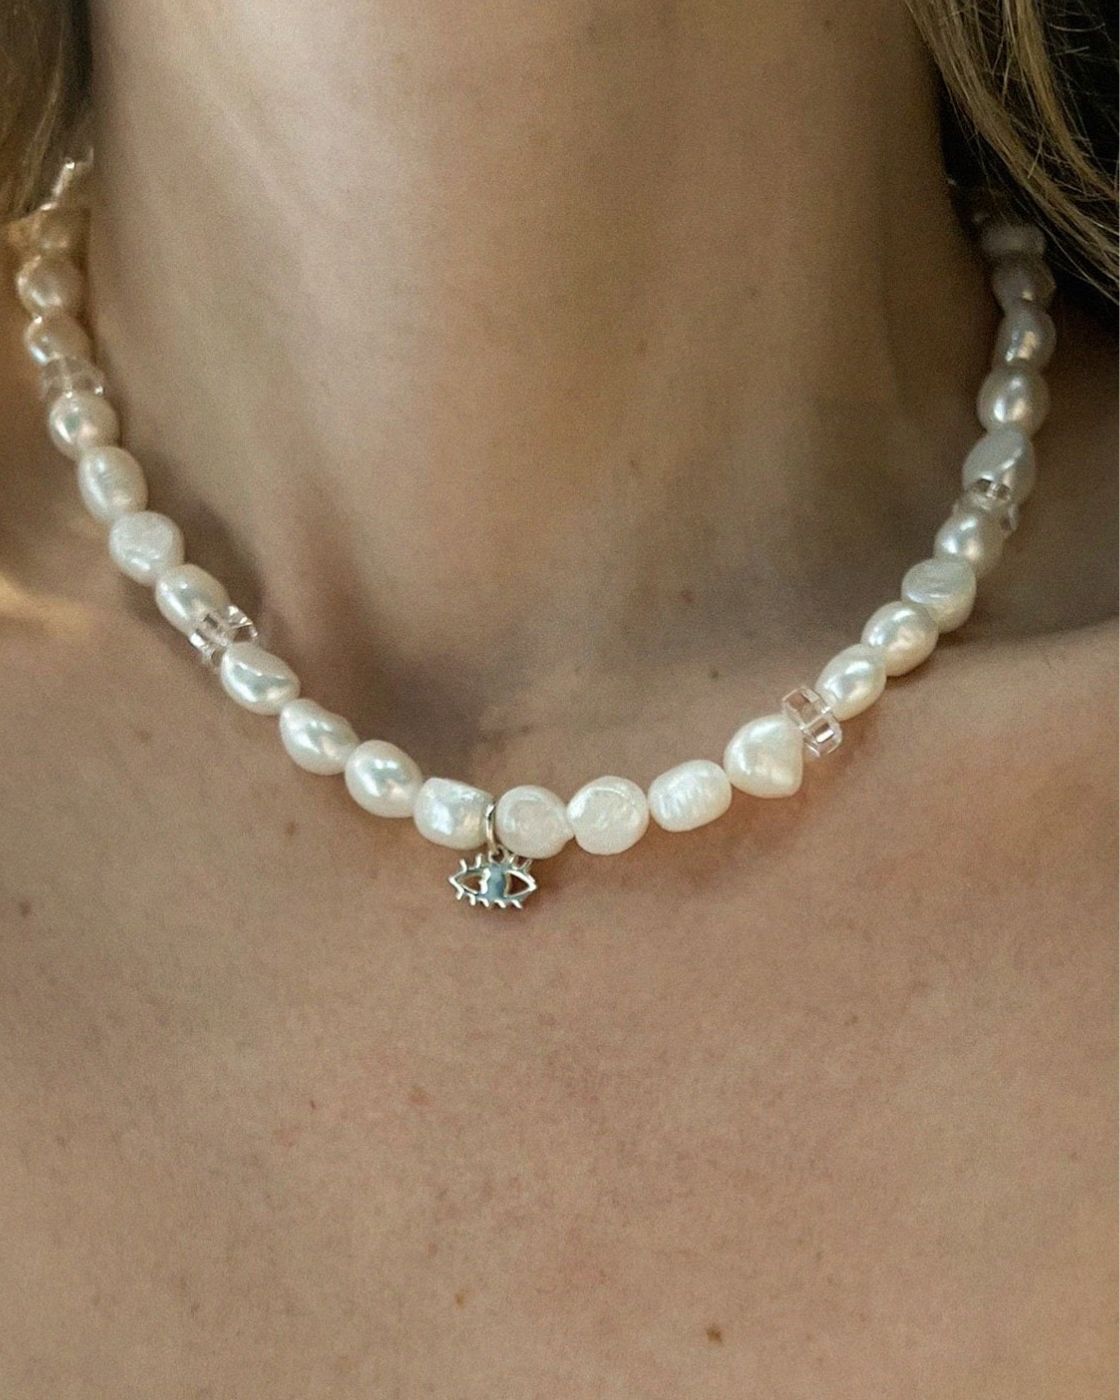 Vilma Ghost Perlenkette